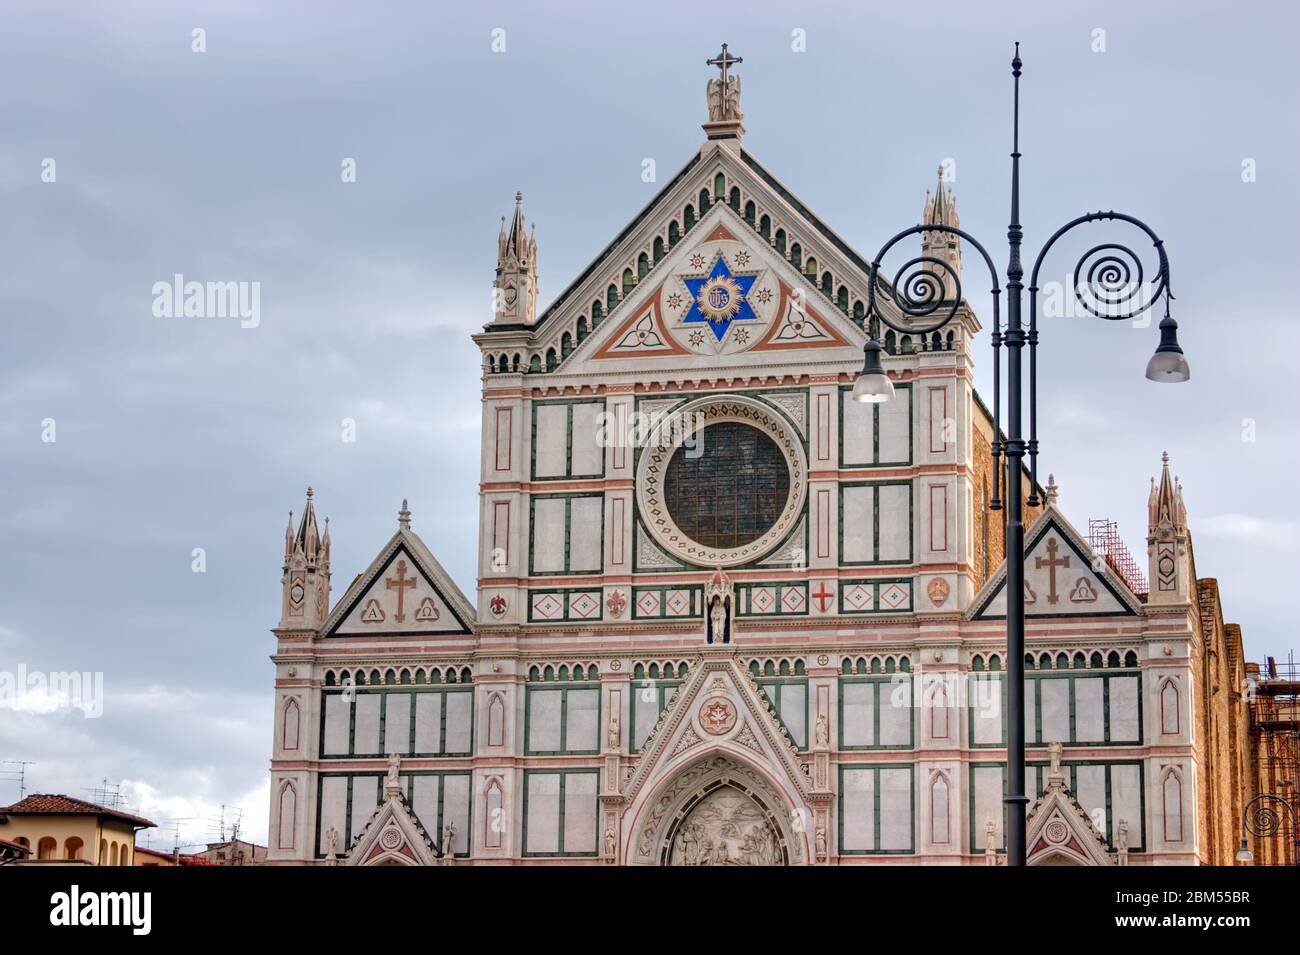 Cathedral Church Duomo basilica di santa maria del fiore in Florence, Italy Stock Photo